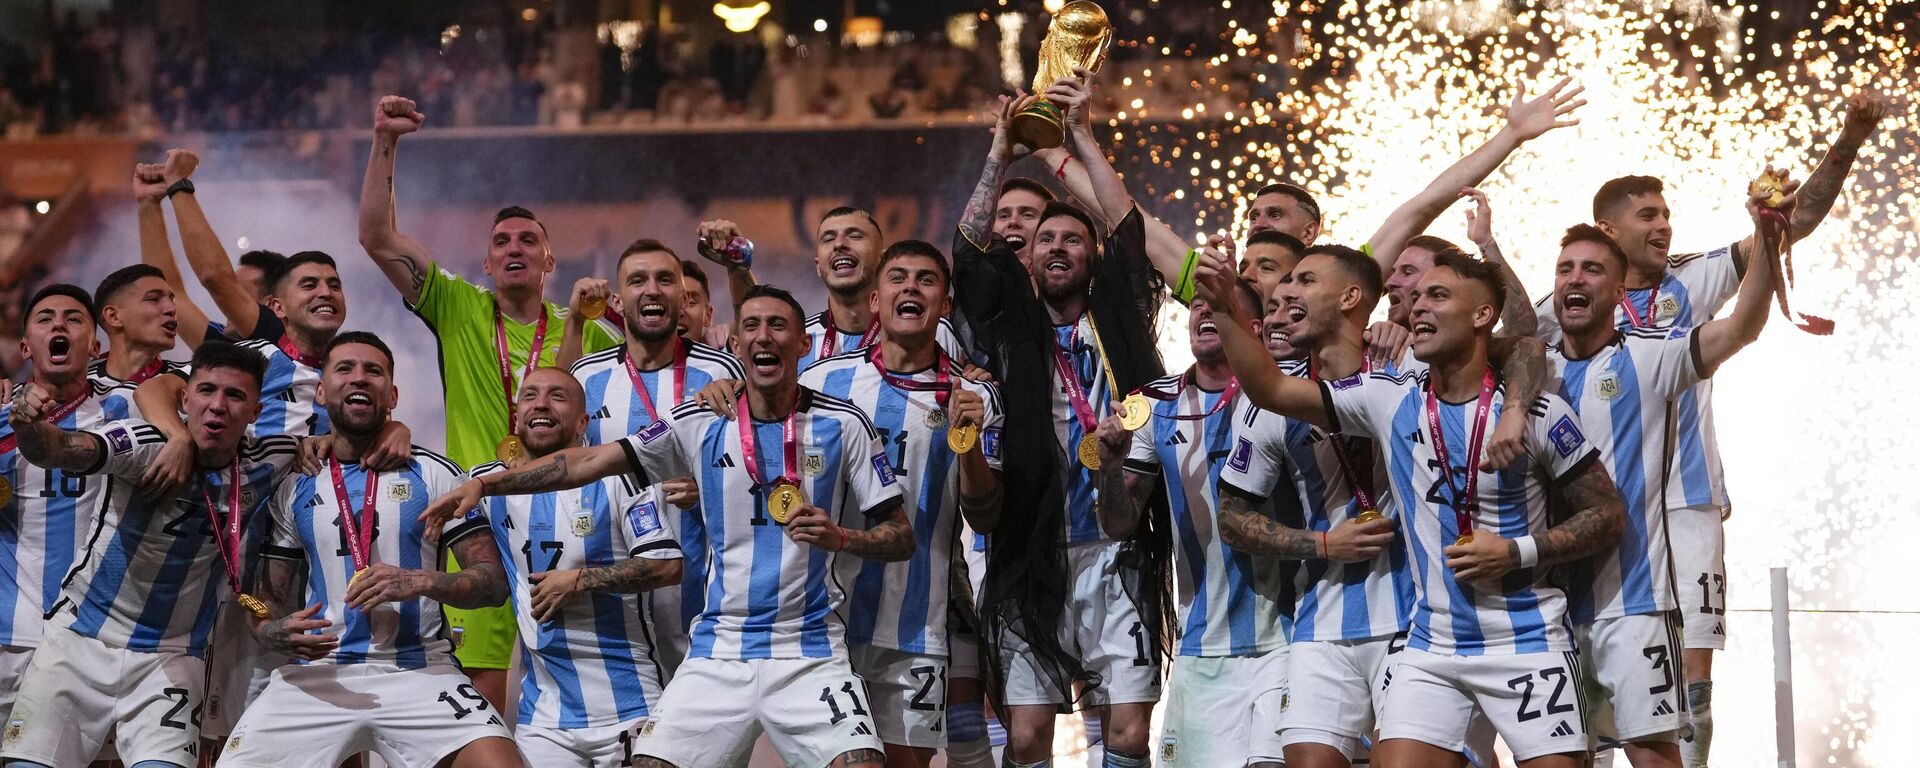 La selección argentina de fútbol, campeona del Mundial de Catar 2022  - Sputnik Mundo, 1920, 20.12.2022